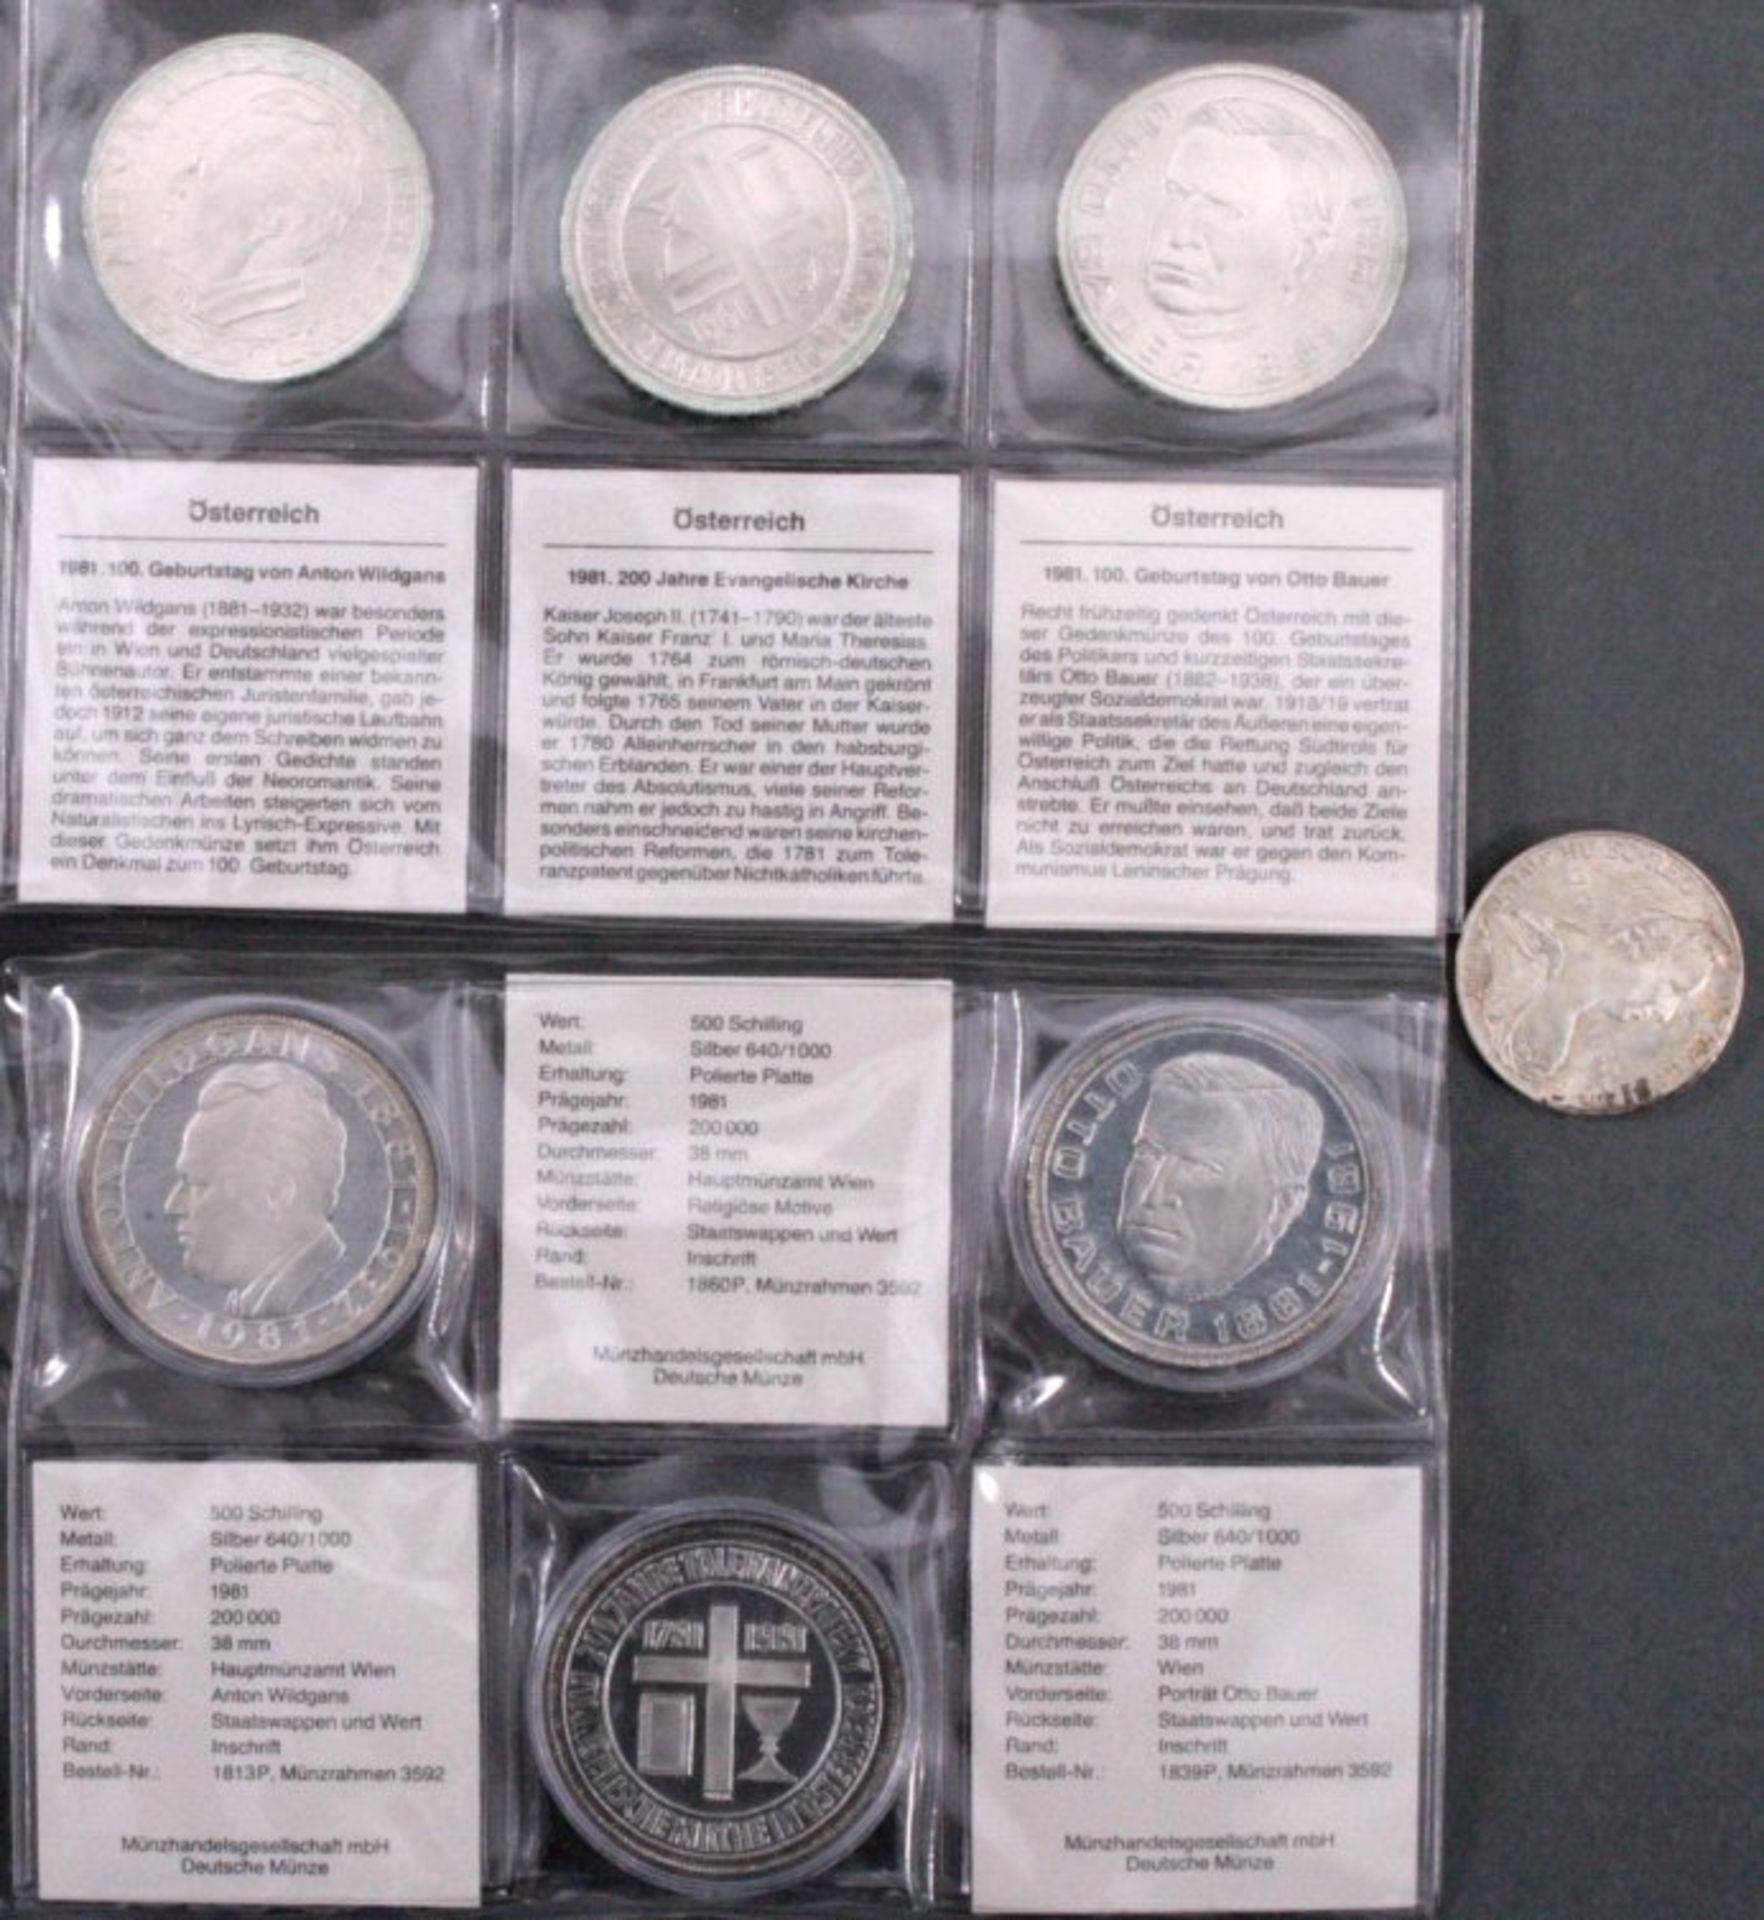 7 Sondermünzen Österreich Silber500 SchillingWildgans (2)200 Jahre evang. Kirche (2)Otto Bauer (2)25